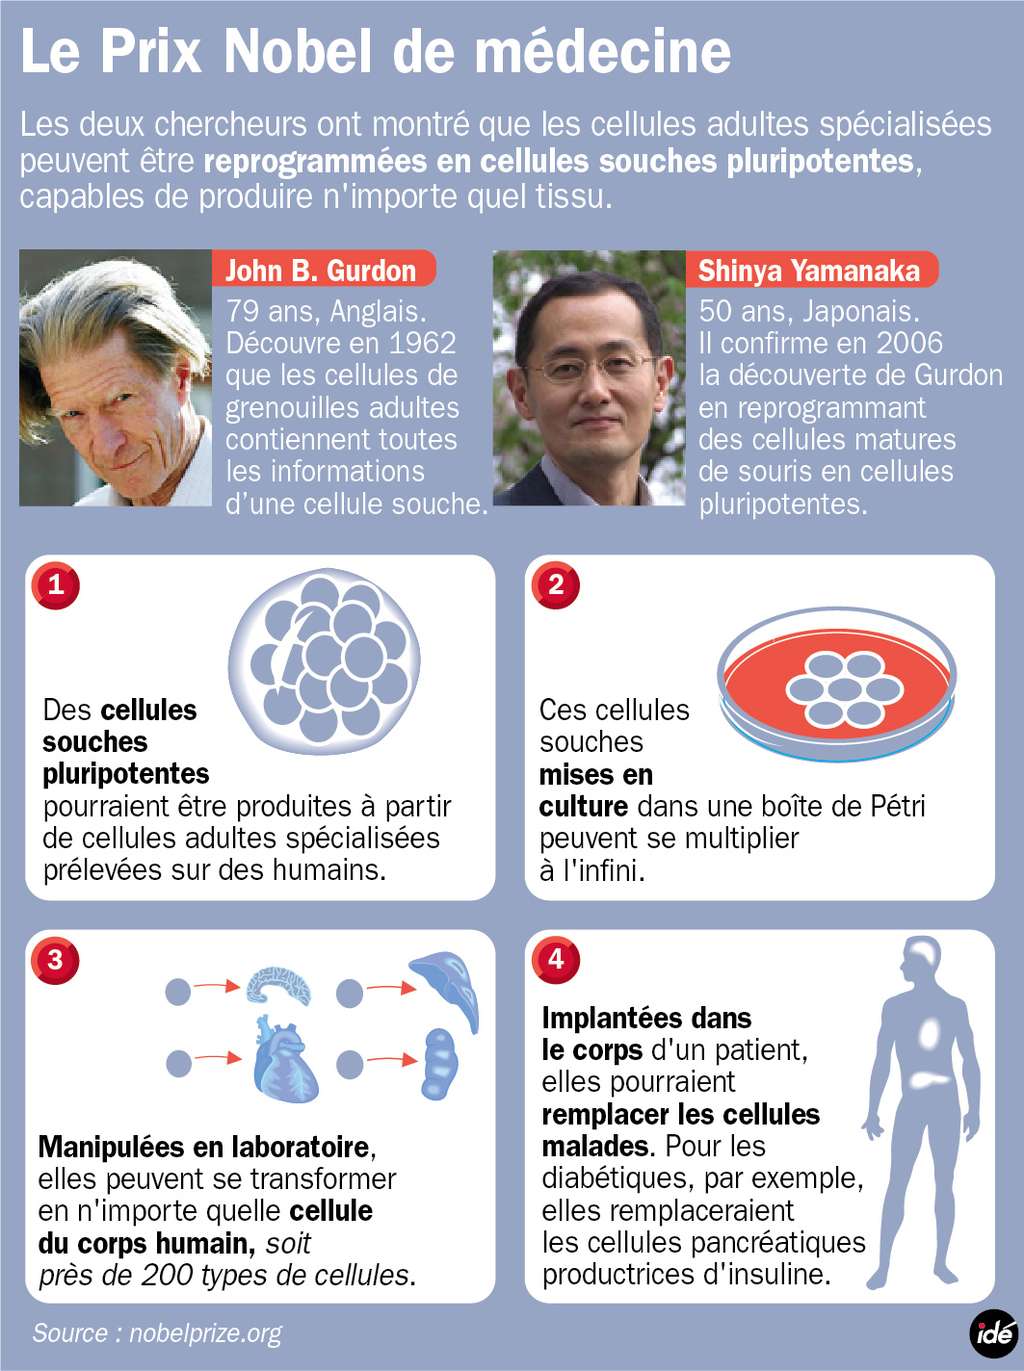 Gurdon et Yamanaka ont reçu le prix Nobel 2012 de médecine pour leurs travaux sur les cellules souches pluripotentes induites : à partir de cellules adultes, on pourrait produire n'importe quelle autre cellule pour remplacer celles malades. © idé